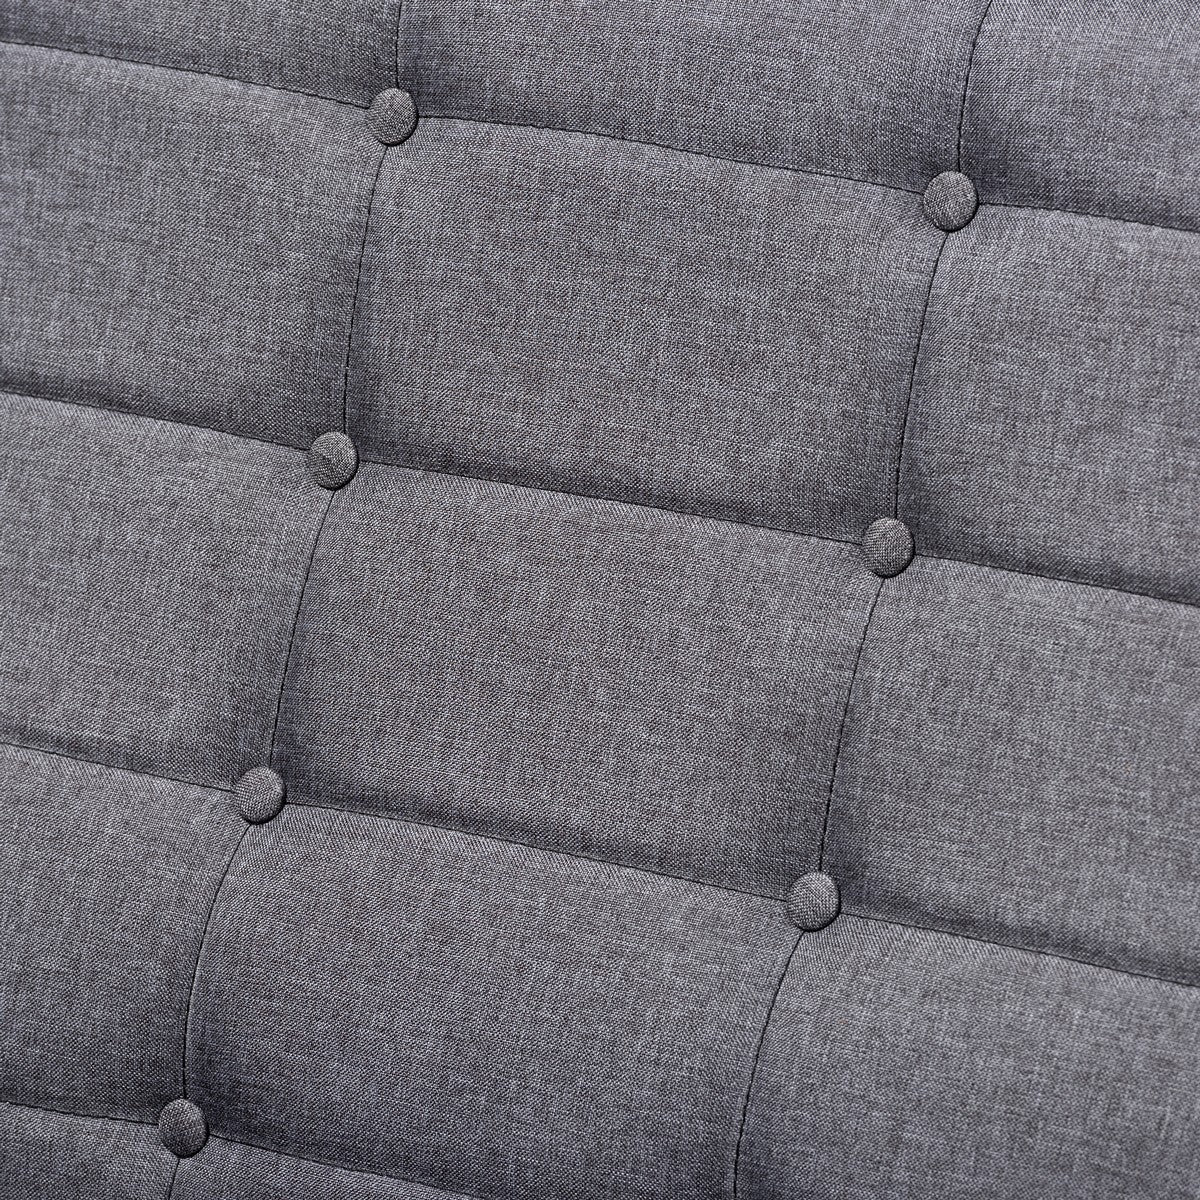 Baxton Studio Larsen Mid-Century Modern Gray Fabric Upholstered Walnut Wood Loveseat